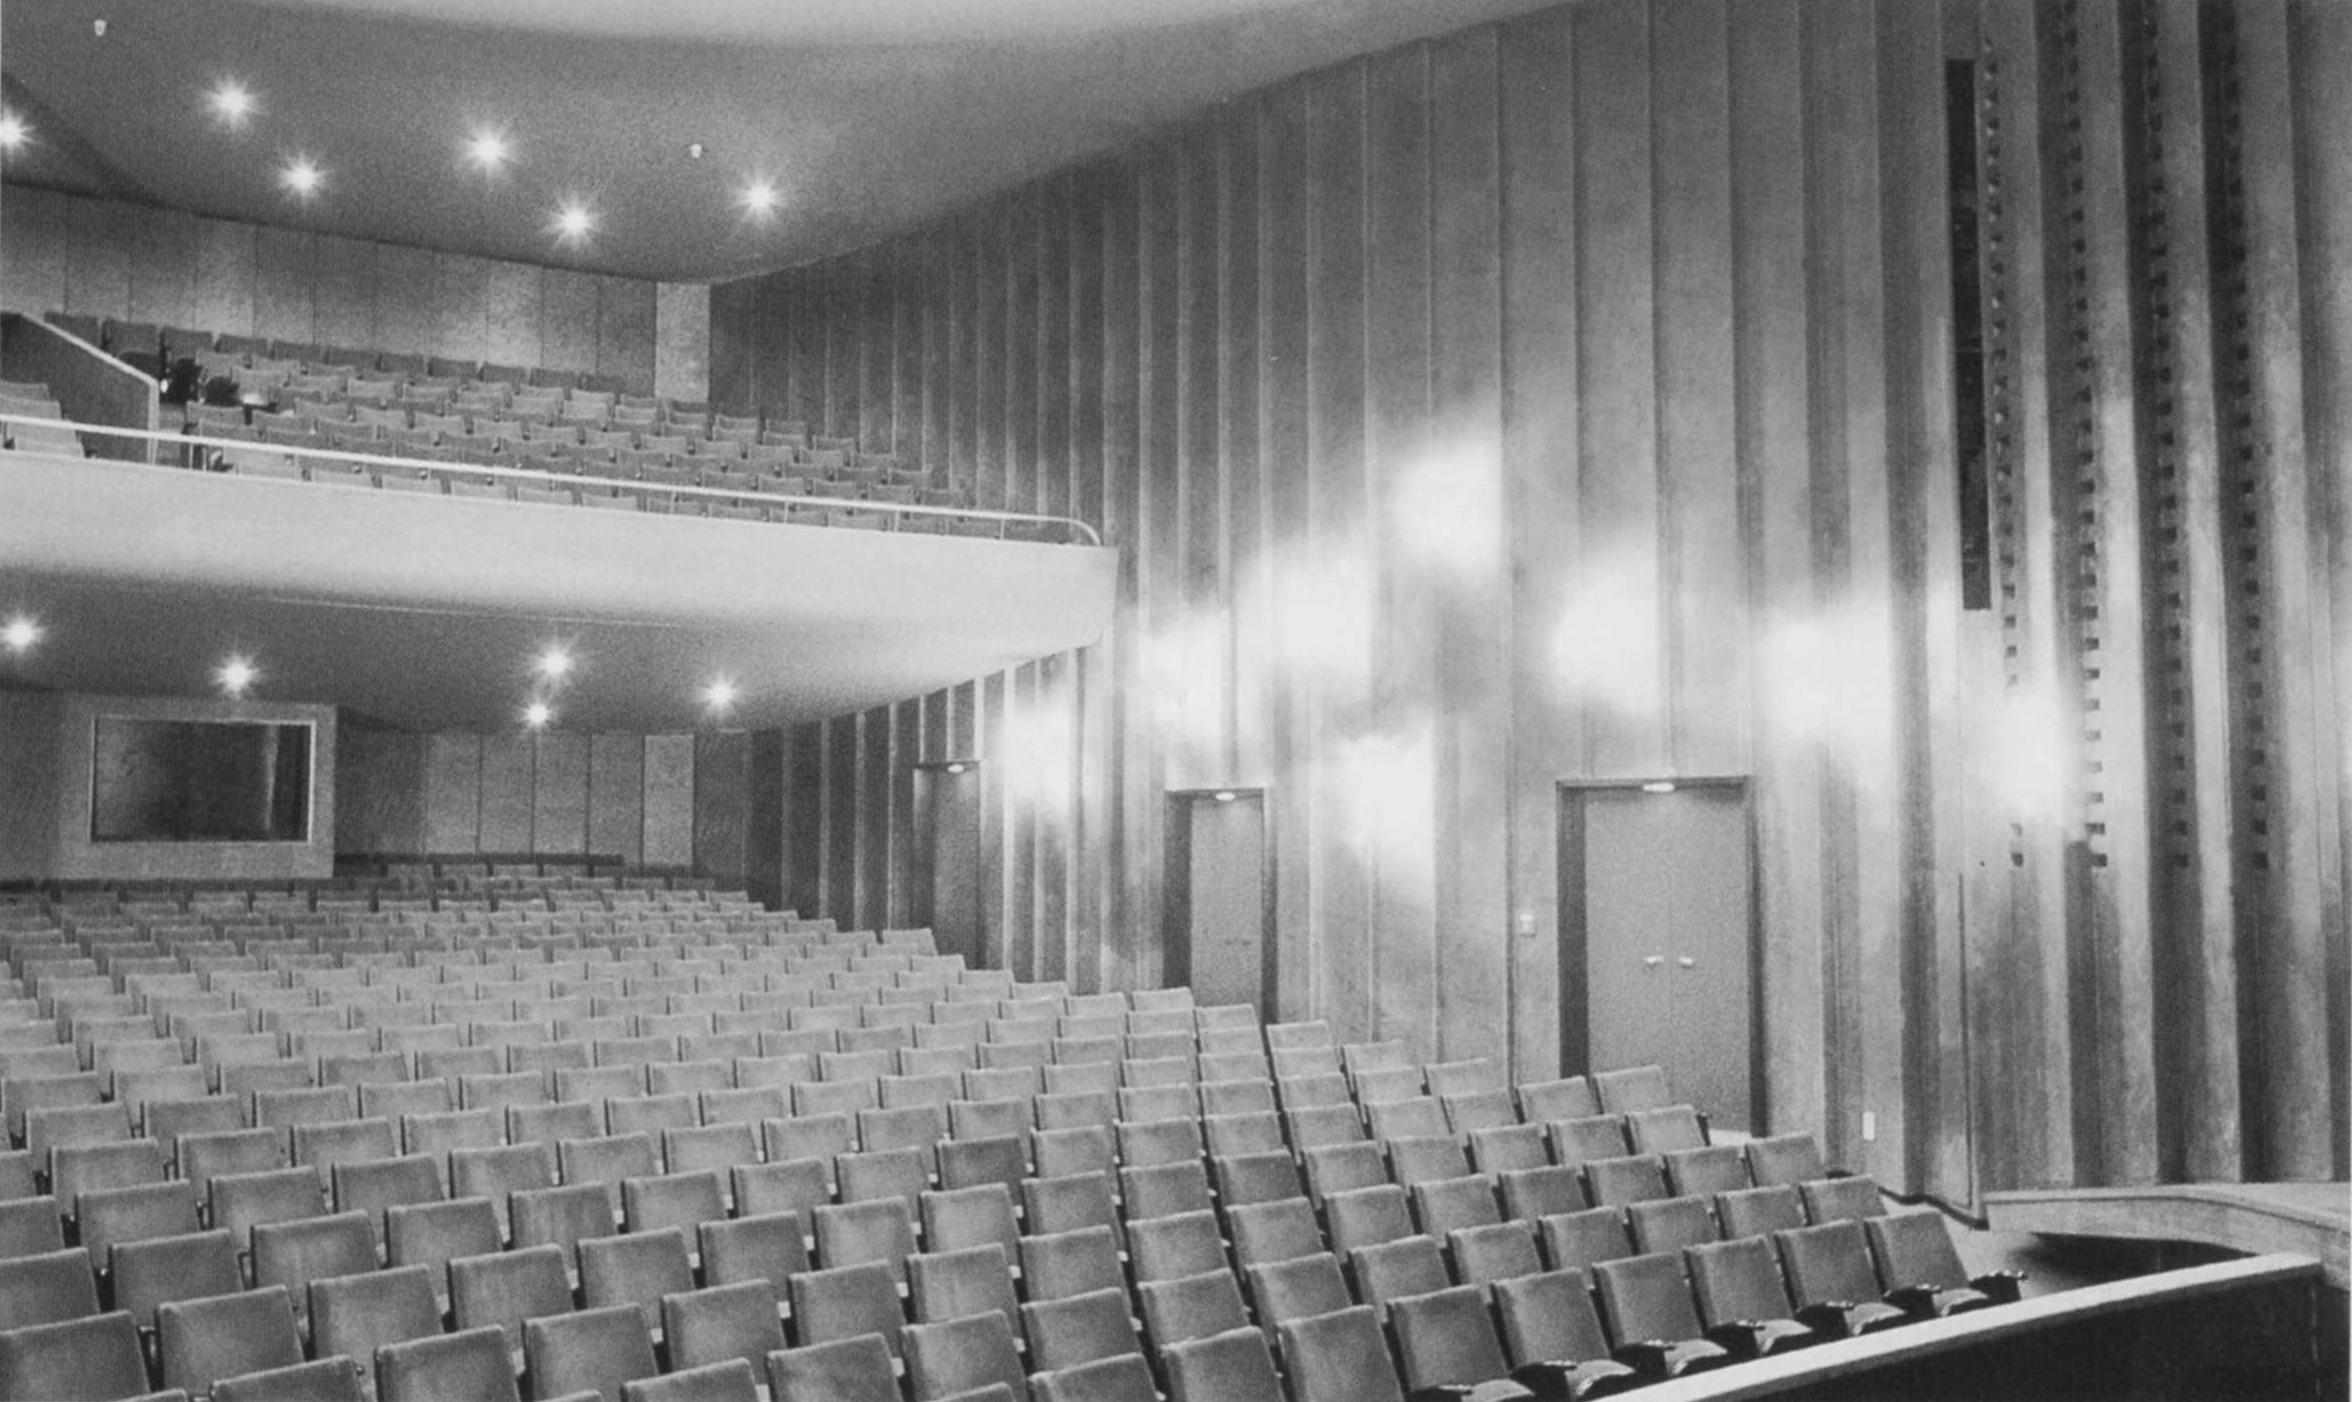 Schauspielhaus mit Blick in den Zuschauerraum mit Rang 1959